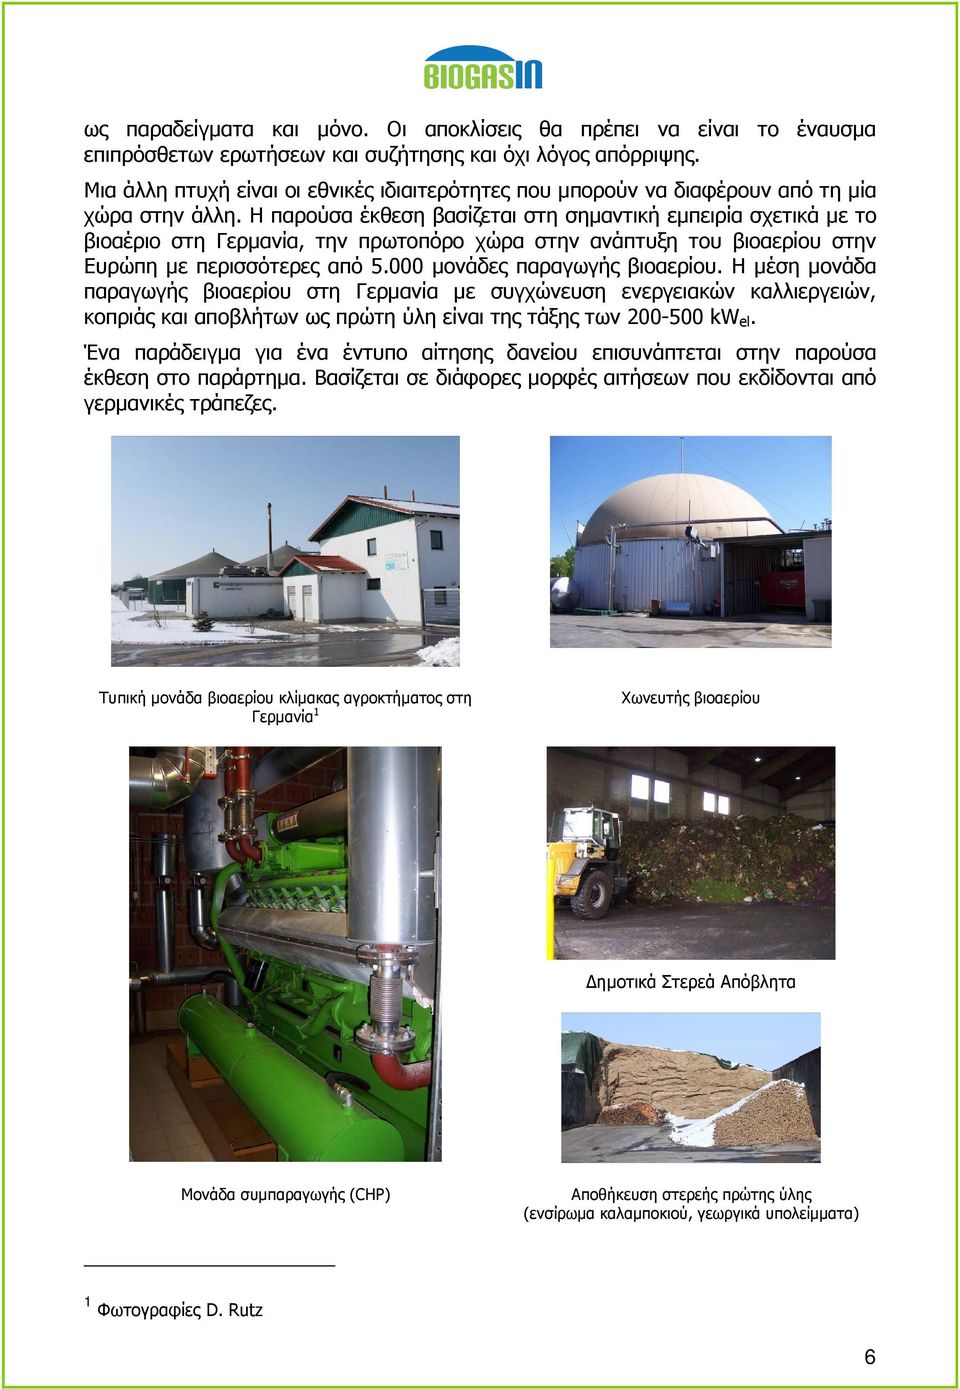 Η παρούσα έκθεση βασίζεται στη σηµαντική εµπειρία σχετικά µε το βιοαέριο στη Γερµανία, την πρωτοπόρο χώρα στην ανάπτυξη του βιοαερίου στην Ευρώπη µε περισσότερες από 5.000 µονάδες παραγωγής βιοαερίου.